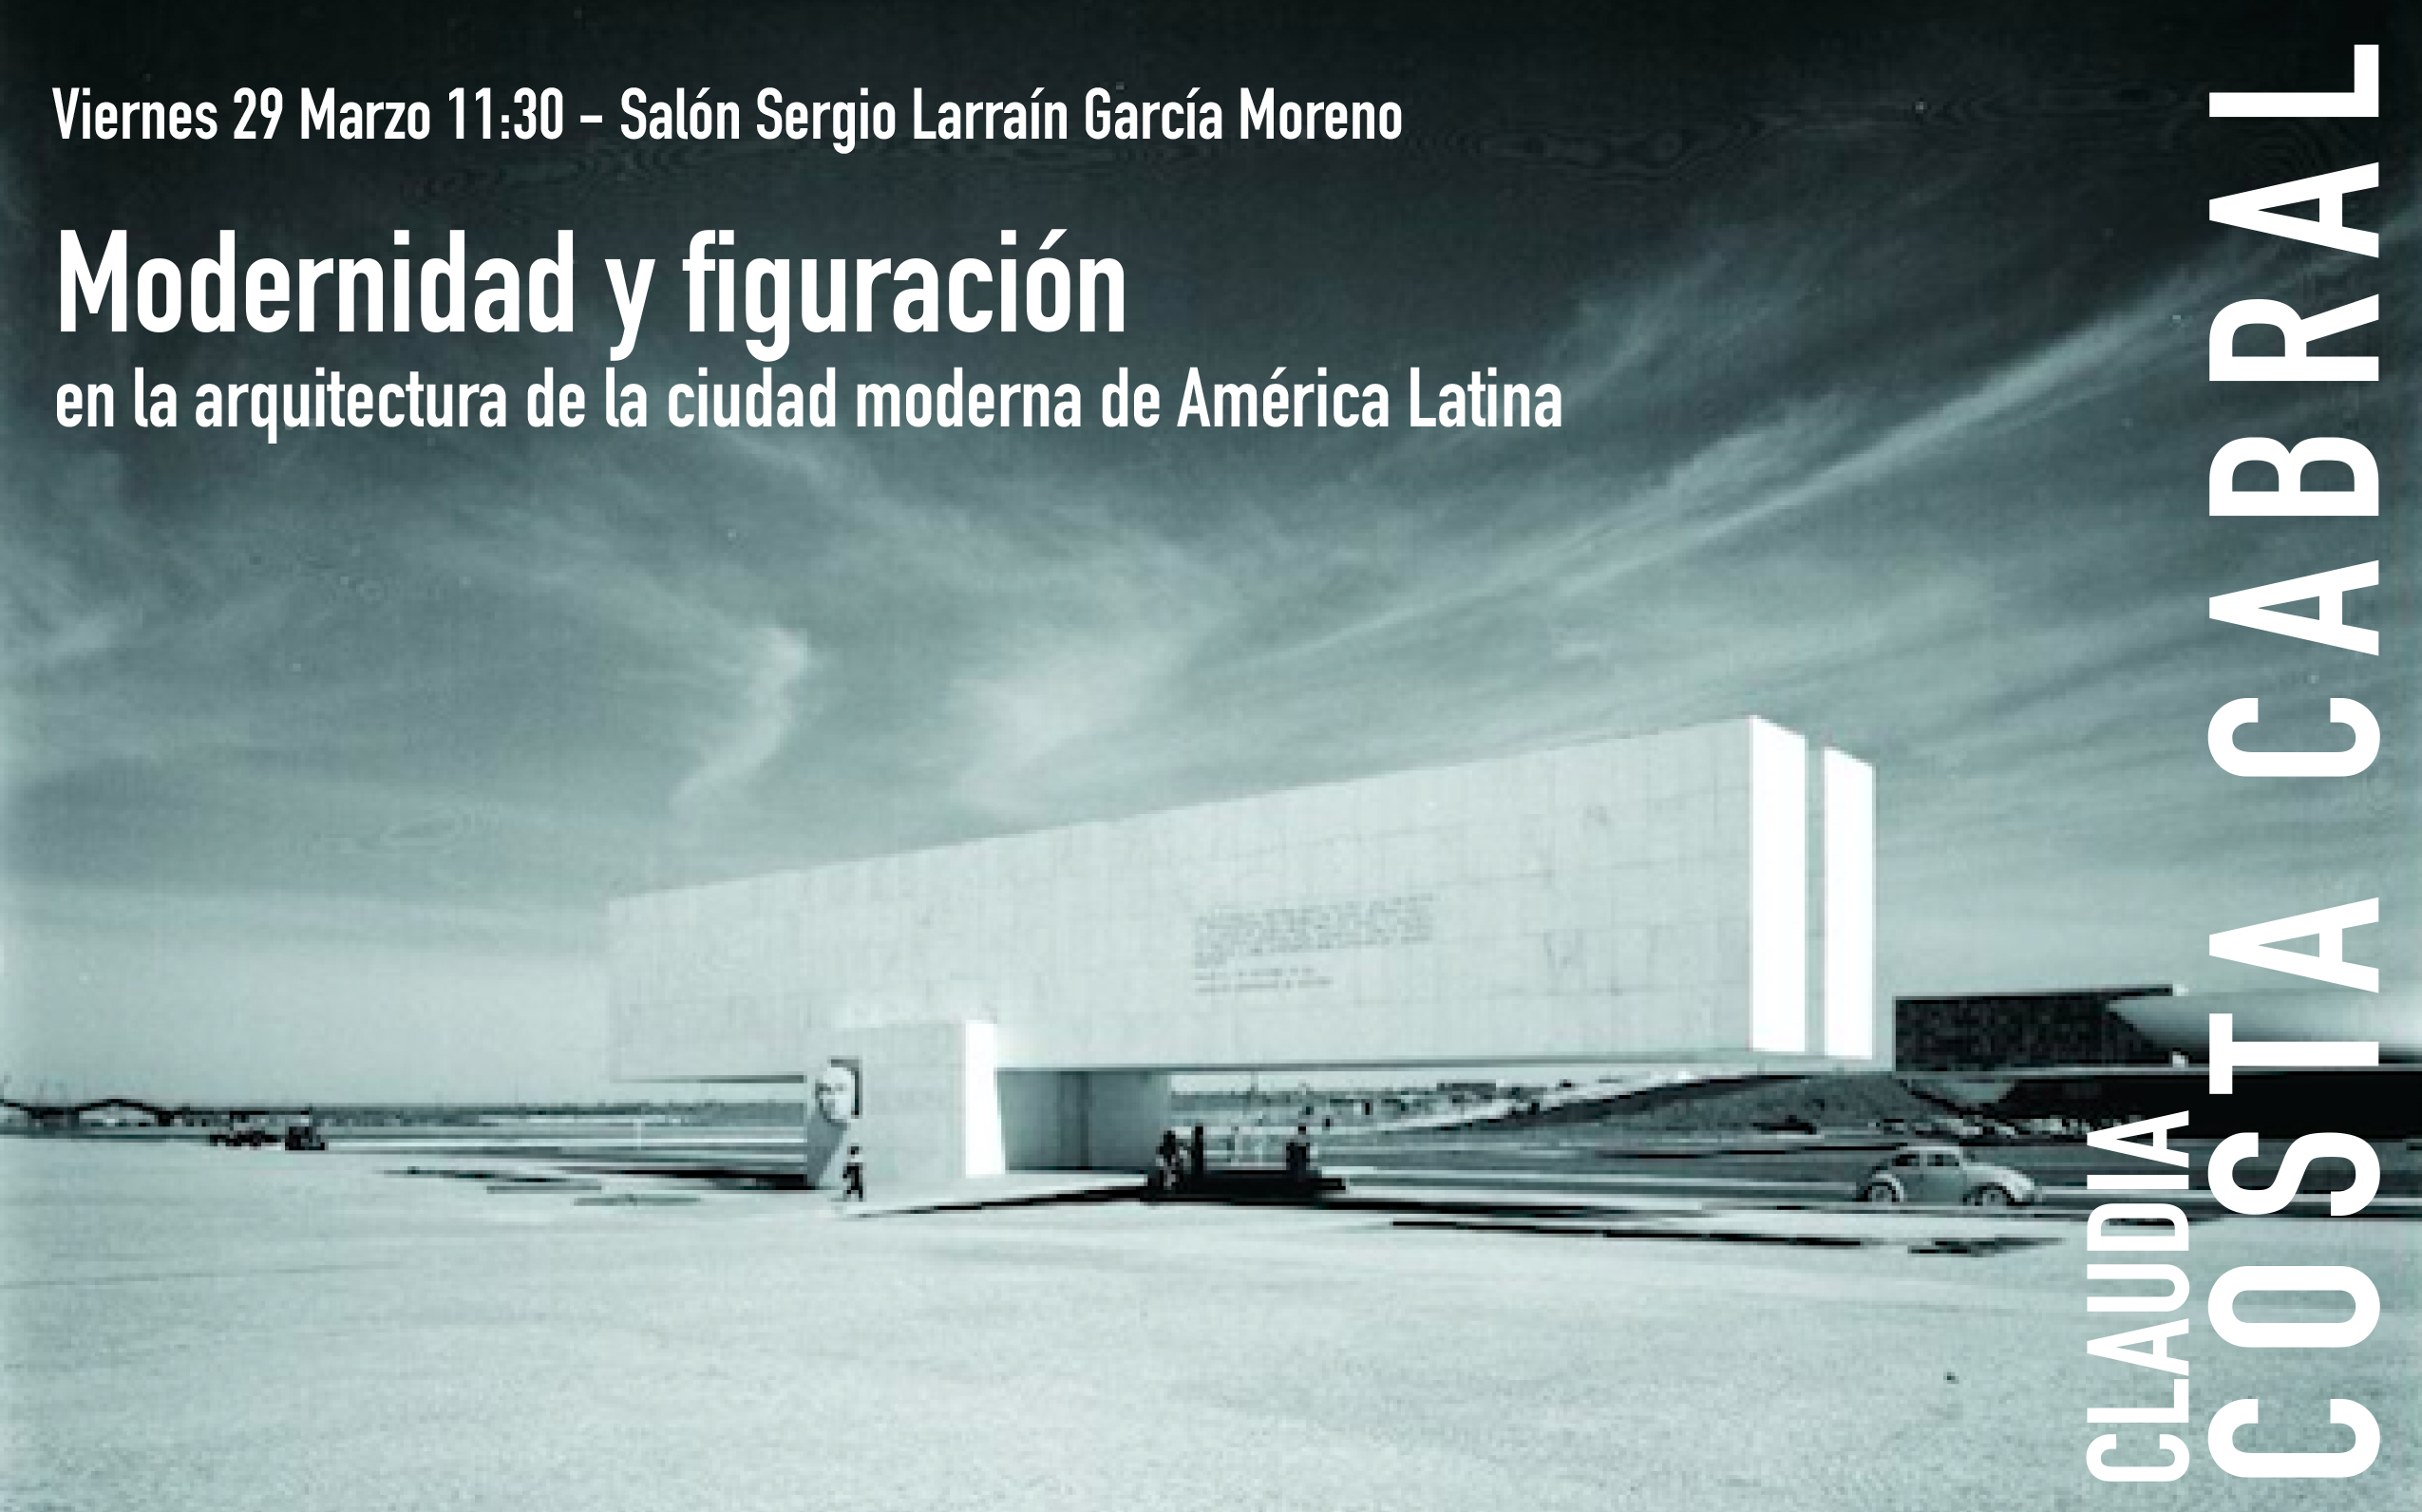 19-03-29_Conferencia_Modernidad_y_figuracion_en_la_arquitectura_de_la_ciudad_moderna_en_America_Latina__Claudia_Costa_Cabral_afiche.jpg